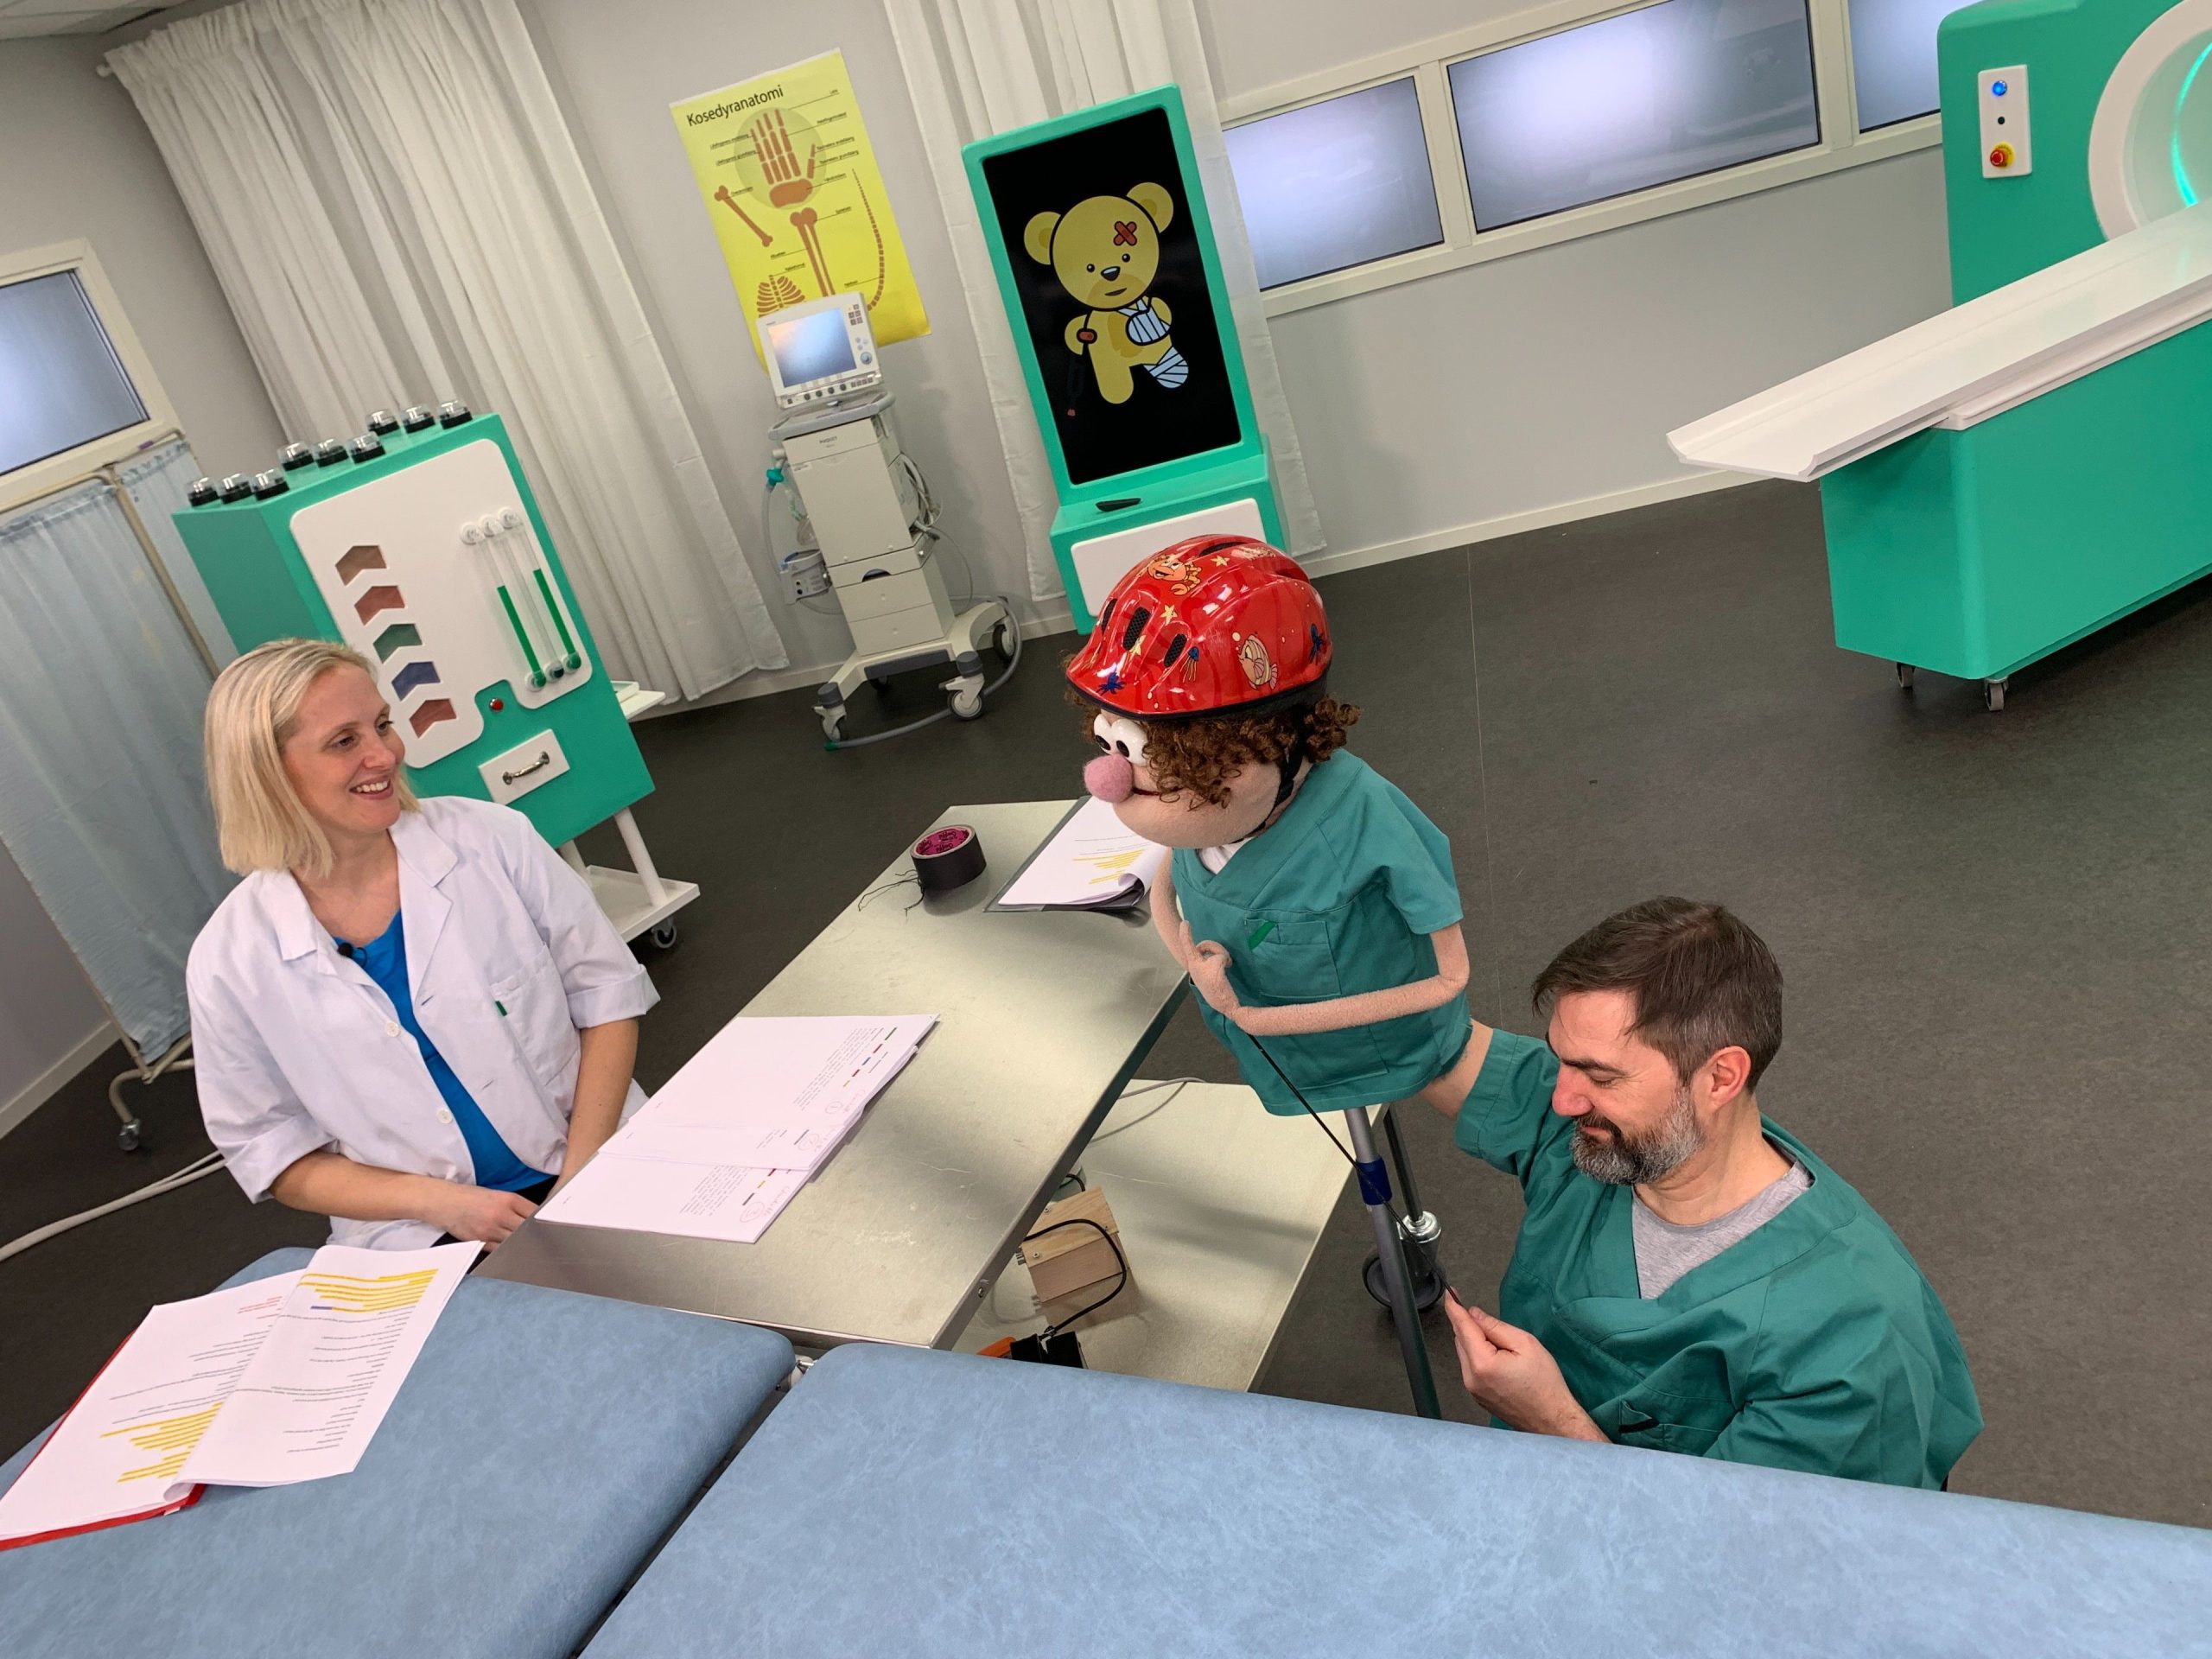 Bilde fra innspilling av Bamselegen på NRK Super. Dukkestyrer sitter på gulvet og styrer dukken Gilbert, som har en samtale med mennesket og legen Charlotte i studio som ligner et legekontor.